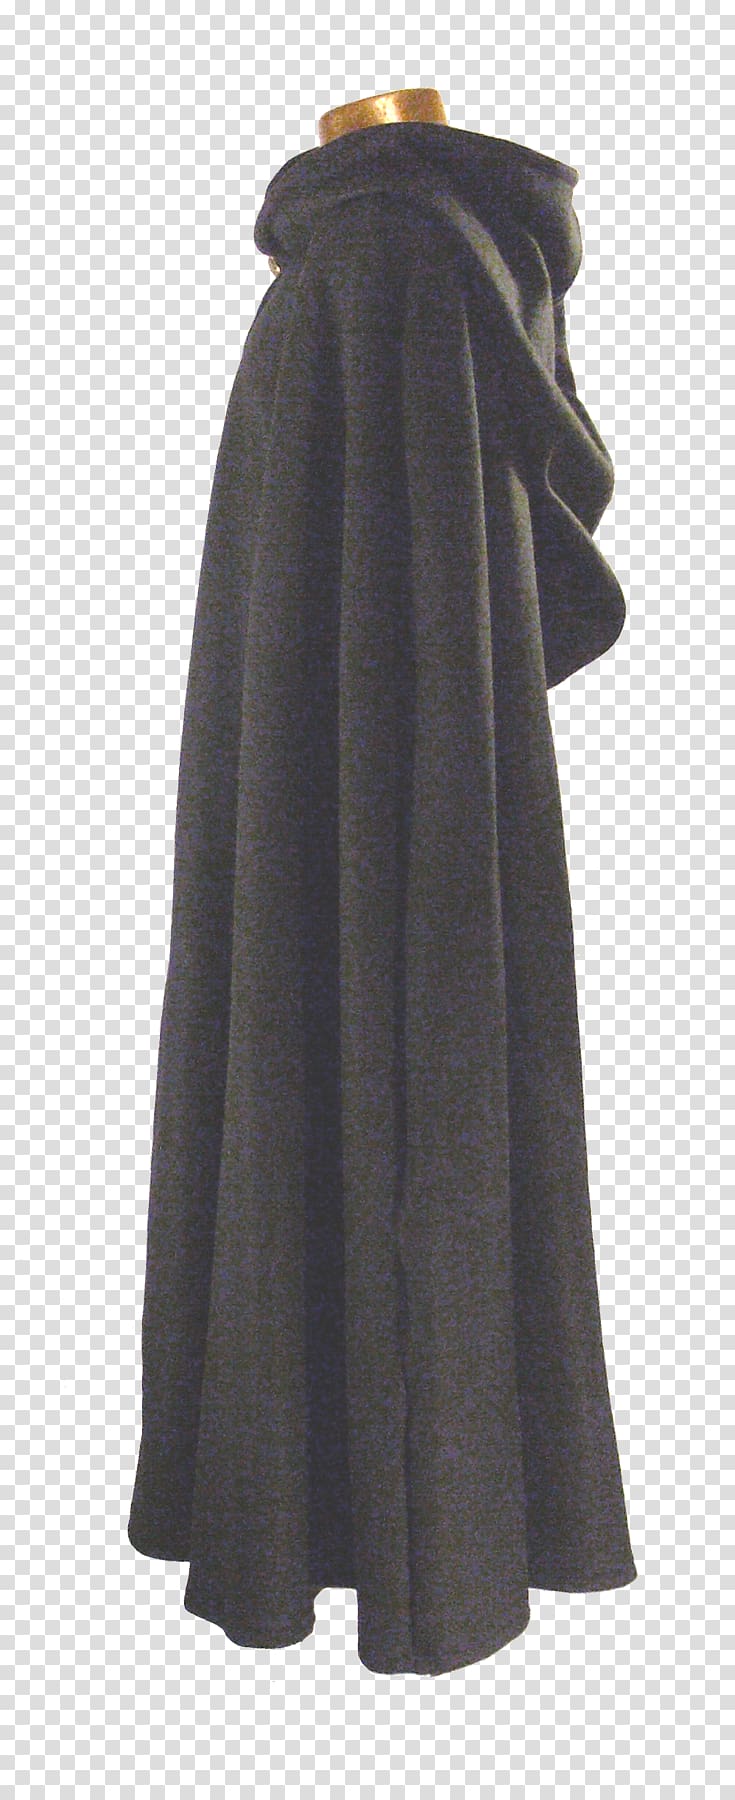 Middle Ages Cape Coat Cloak Outerwear, cape transparent background PNG clipart